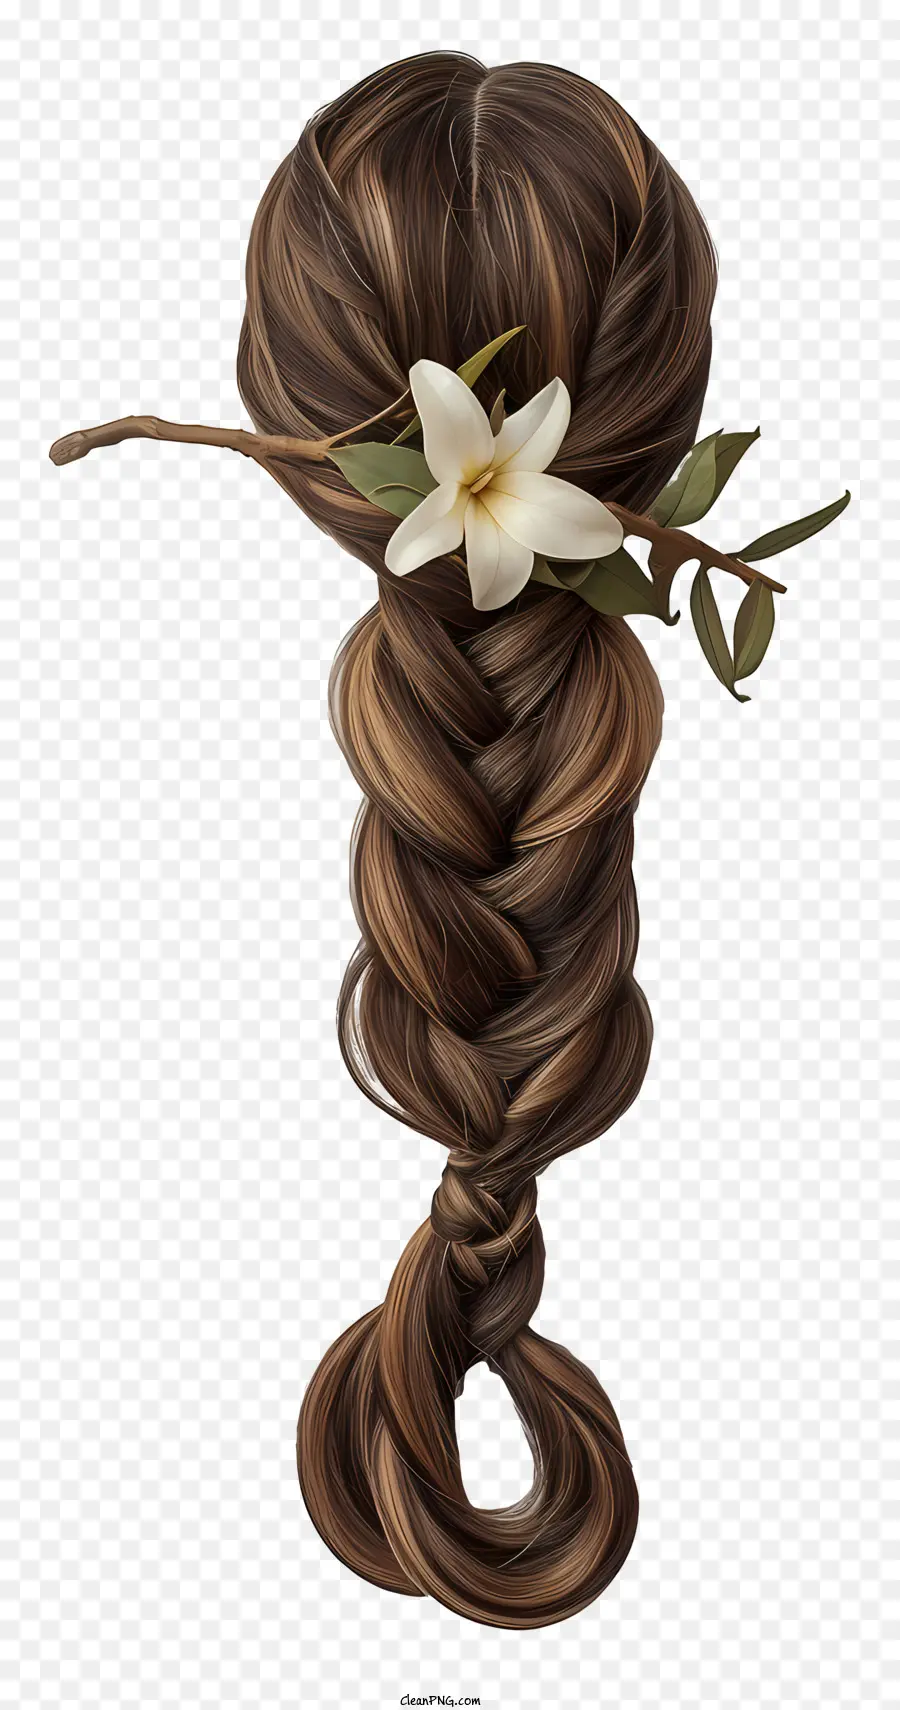 braided hair wig long brown hair braid hairstyle white flowers in hair hair accessories